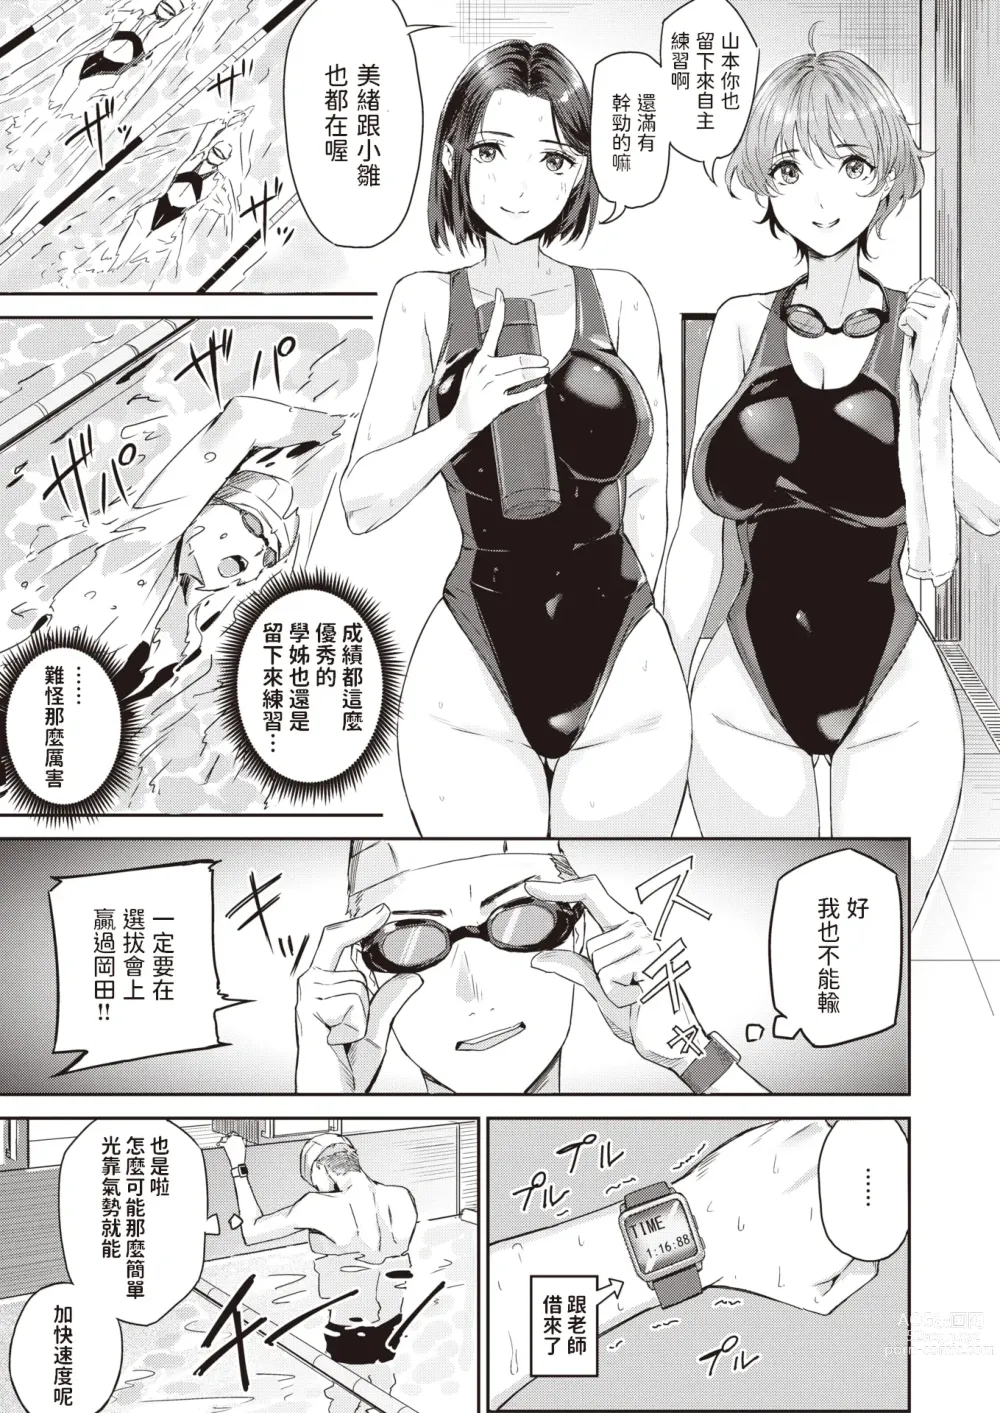 Page 3 of manga Splash!